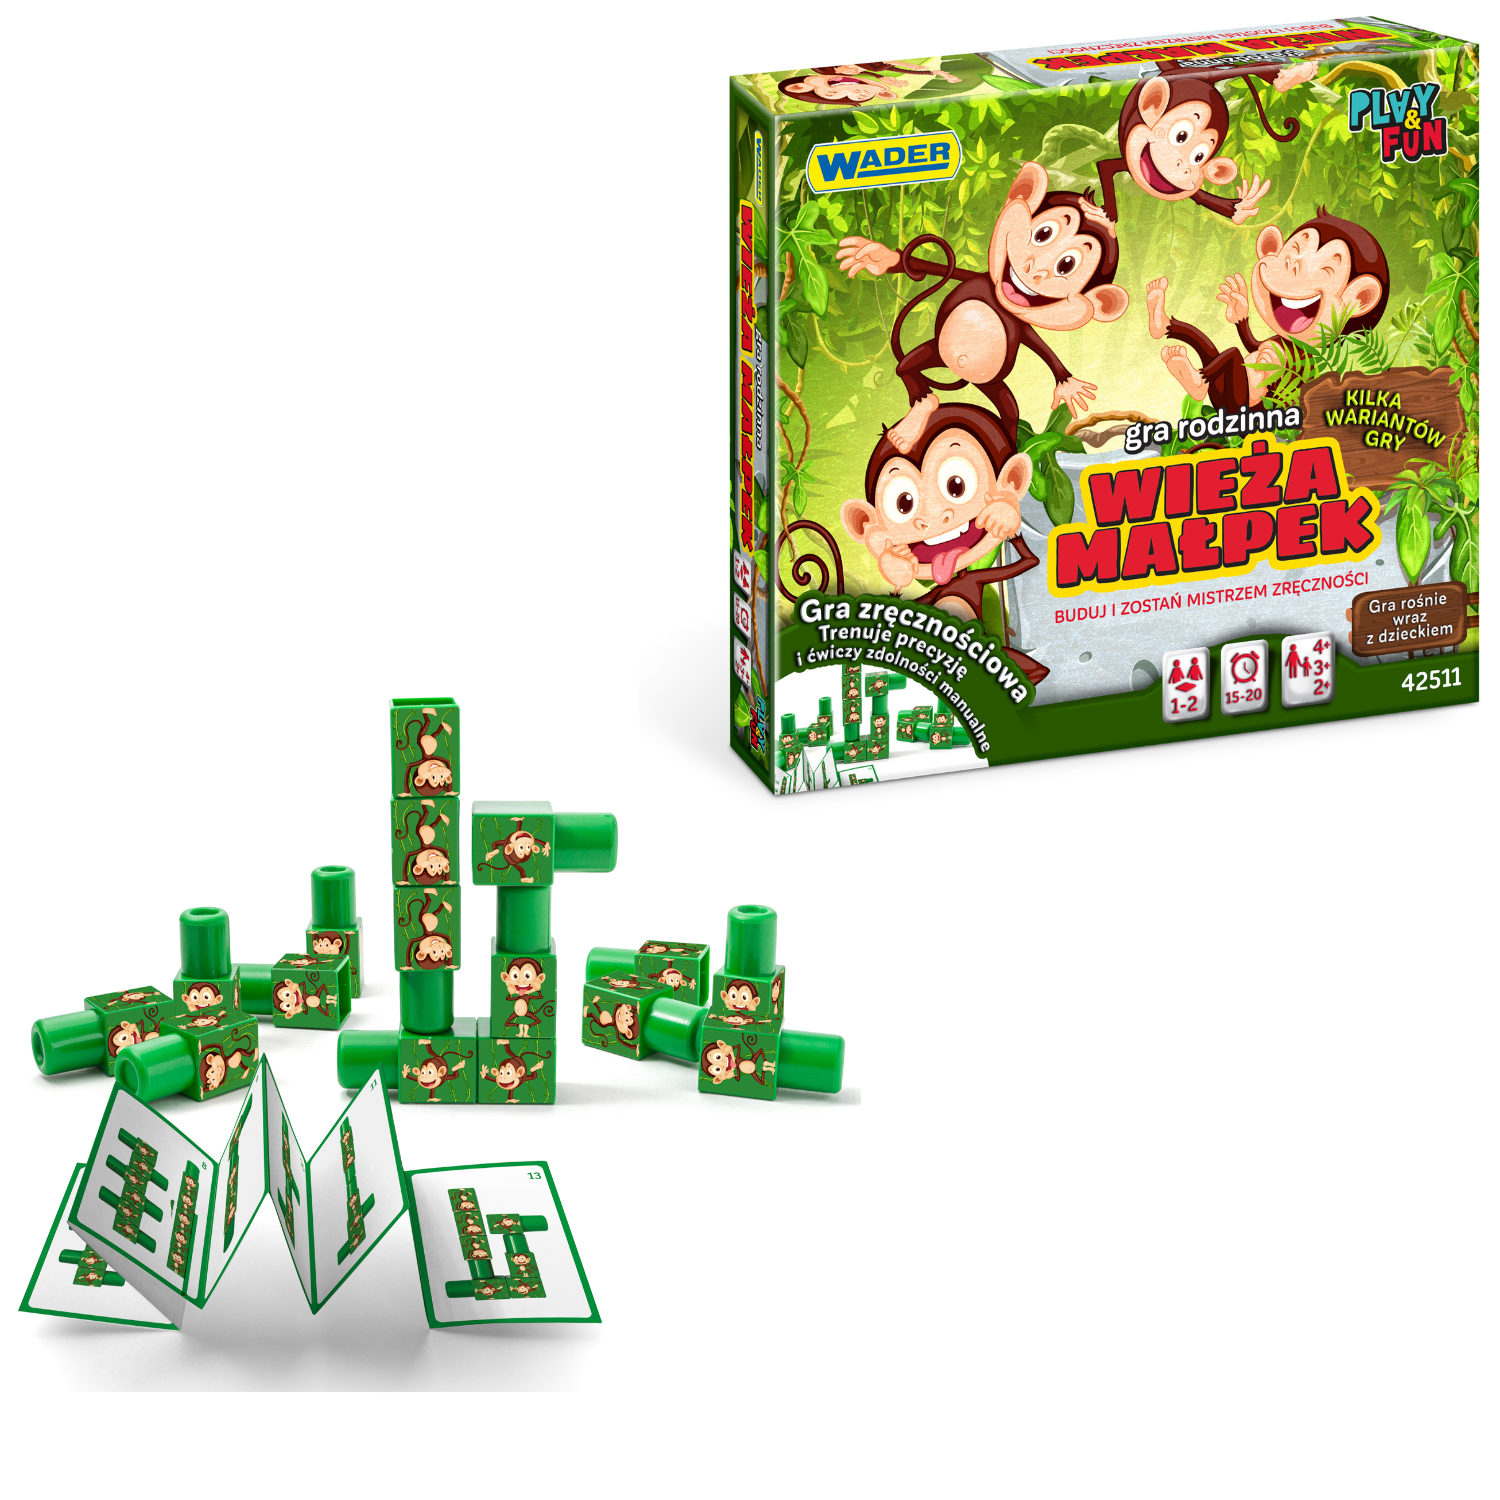 Gra zręcznościowa wieża małpek +2 Play&Fun Wader